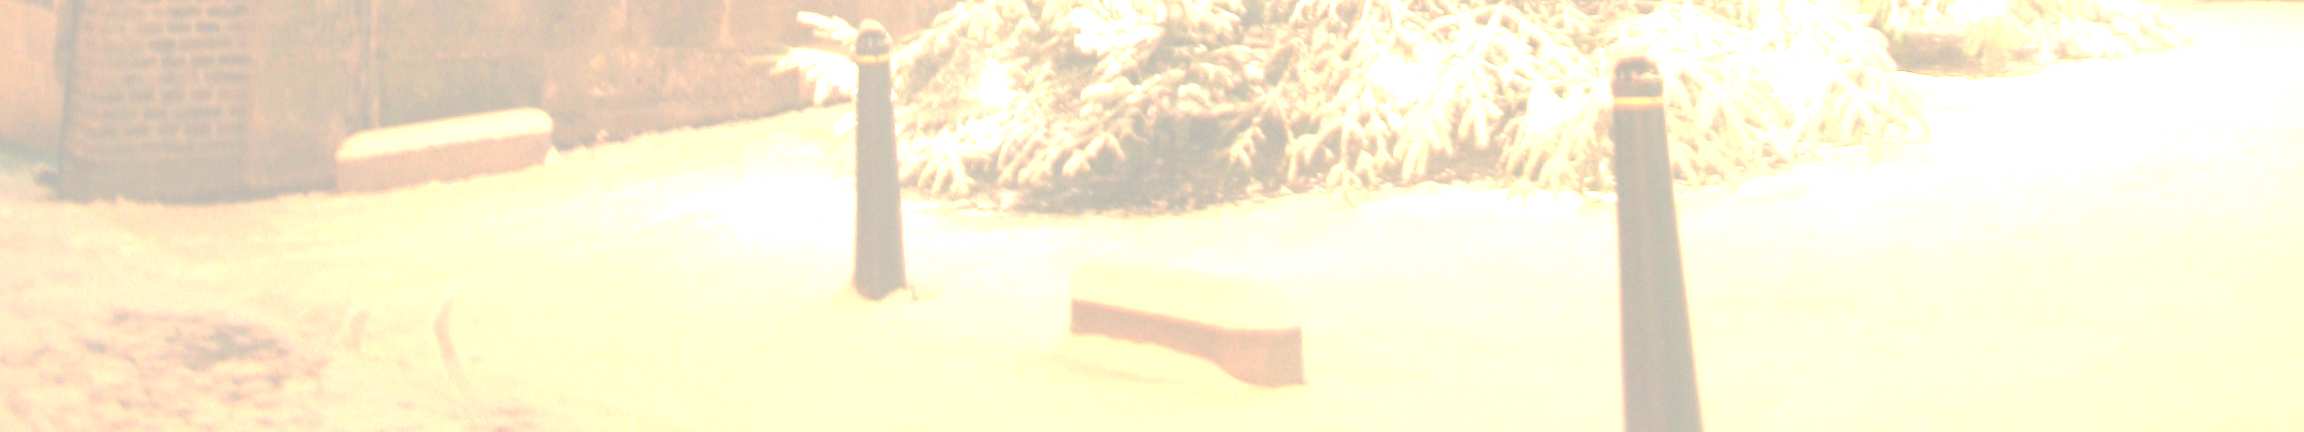 Kerstbuffet 24 december Wildzwijnpaté met gemarineerde abrikozen Hertenham met hartige koekjes van tijm Carpaccio van het Lakenvelder rund uit Voerendaal Hangop met gemarineerde vergeten groenten uit